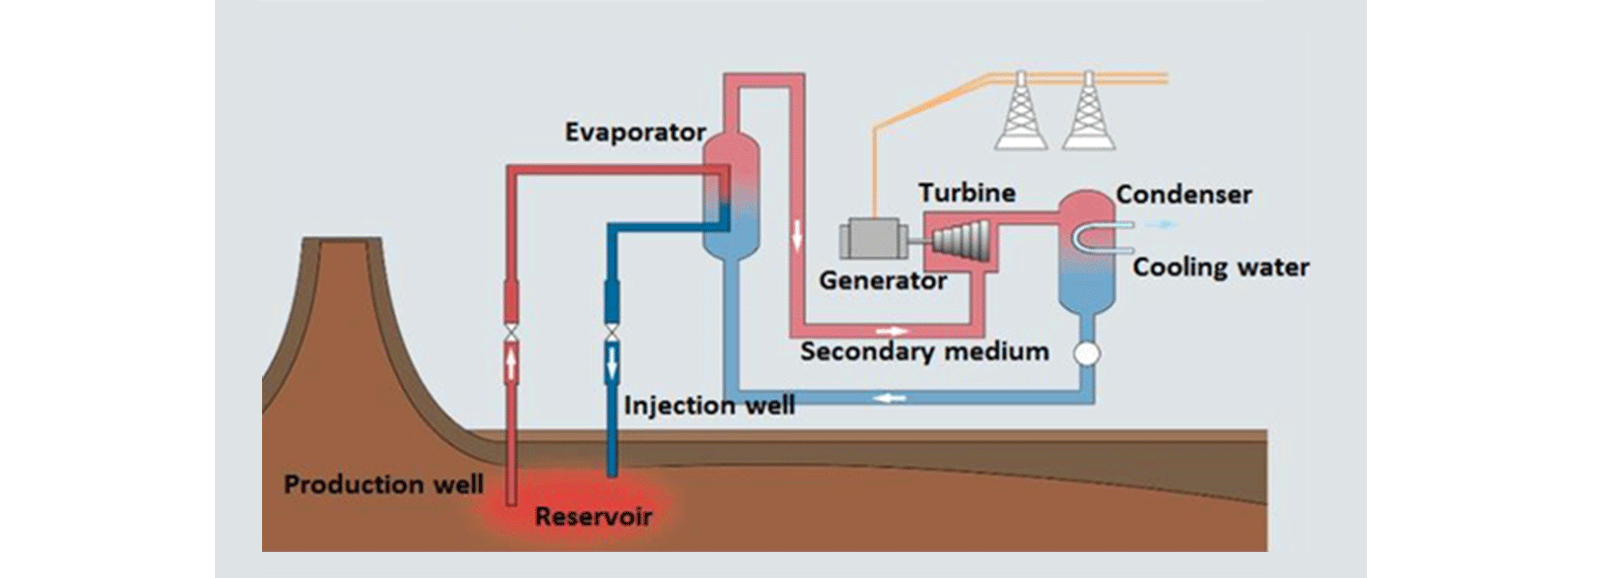 geothermisches kraftwerk binäres zyklussystem schema